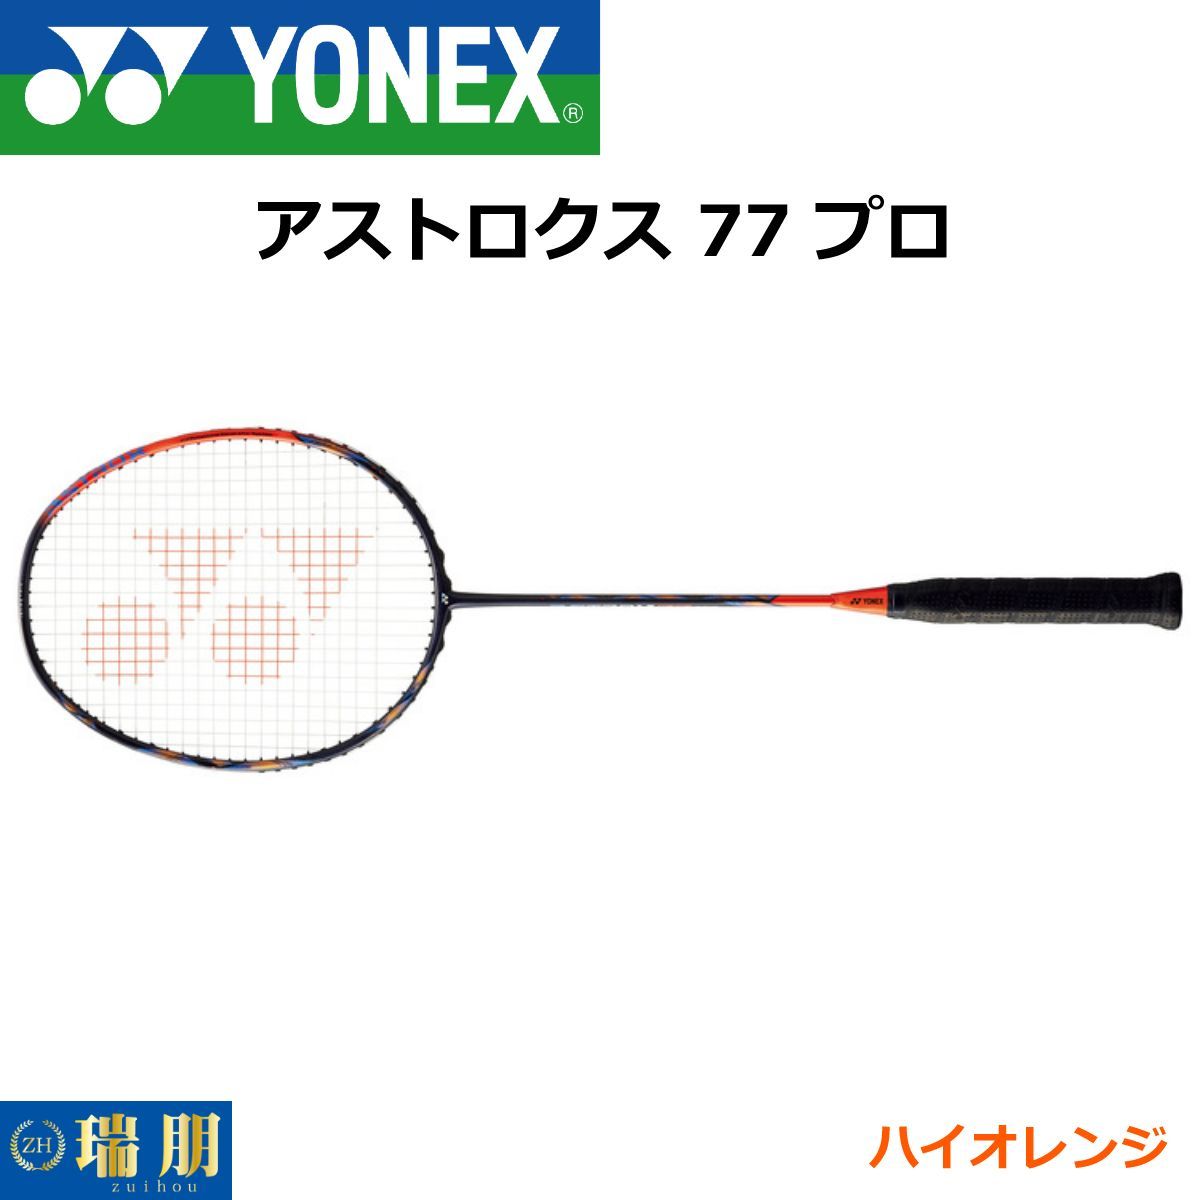 YONEX ヨネックス バドミントンラケット アストロクス 77 プロ AX77-P